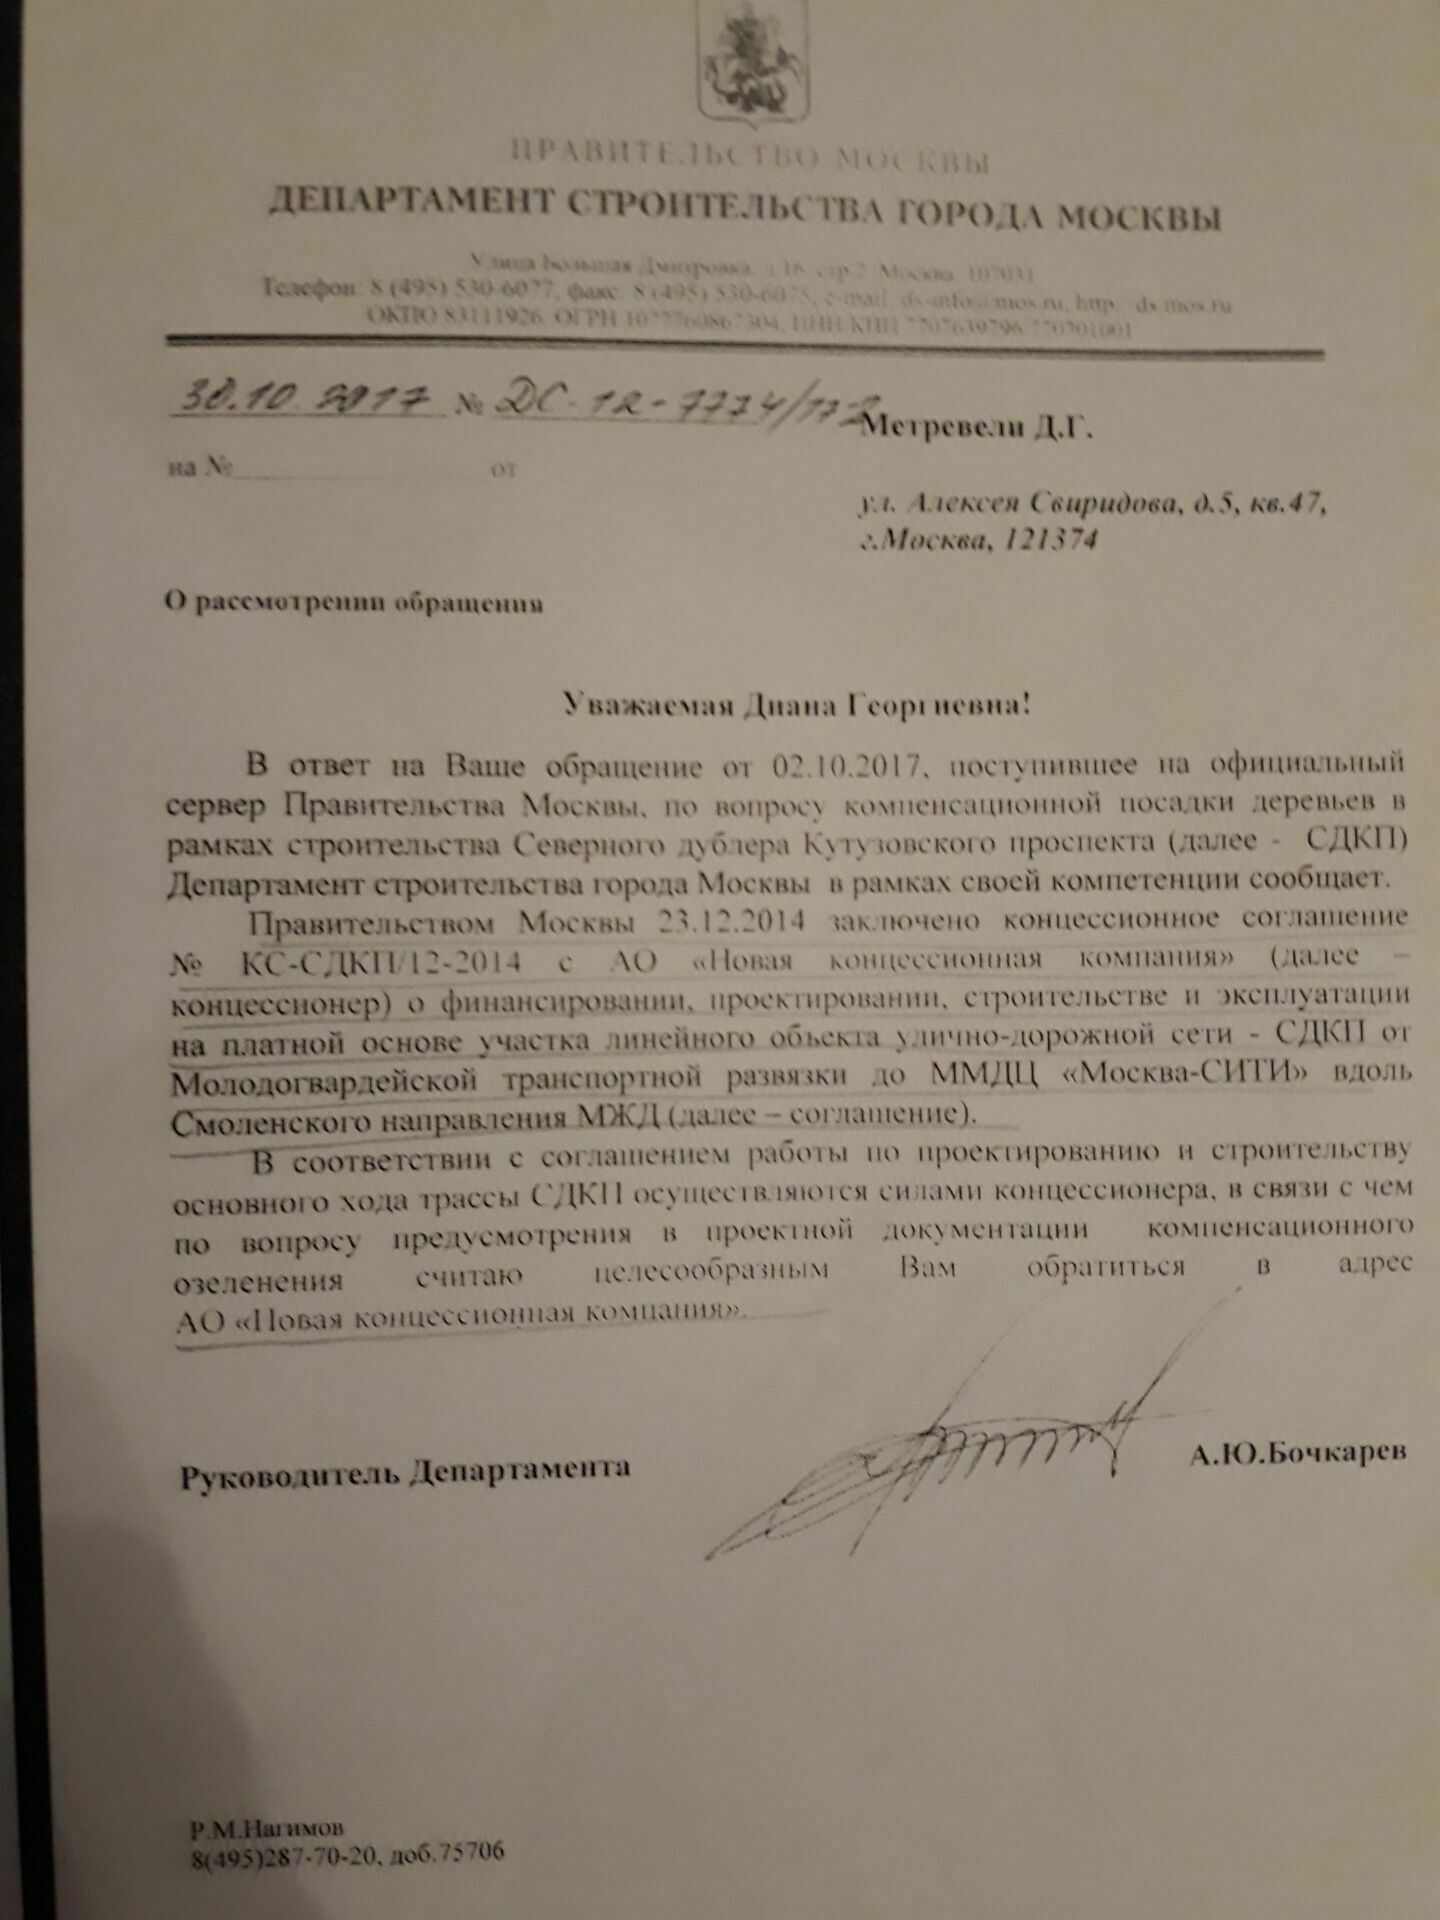 Из ответа Департамента строительства Москвы следует, что  за участок  рощи, в которой находился ЖБОТ и  по которому проходила линия обороны Москвы, отвечает АО "Новая концессионная компания". 